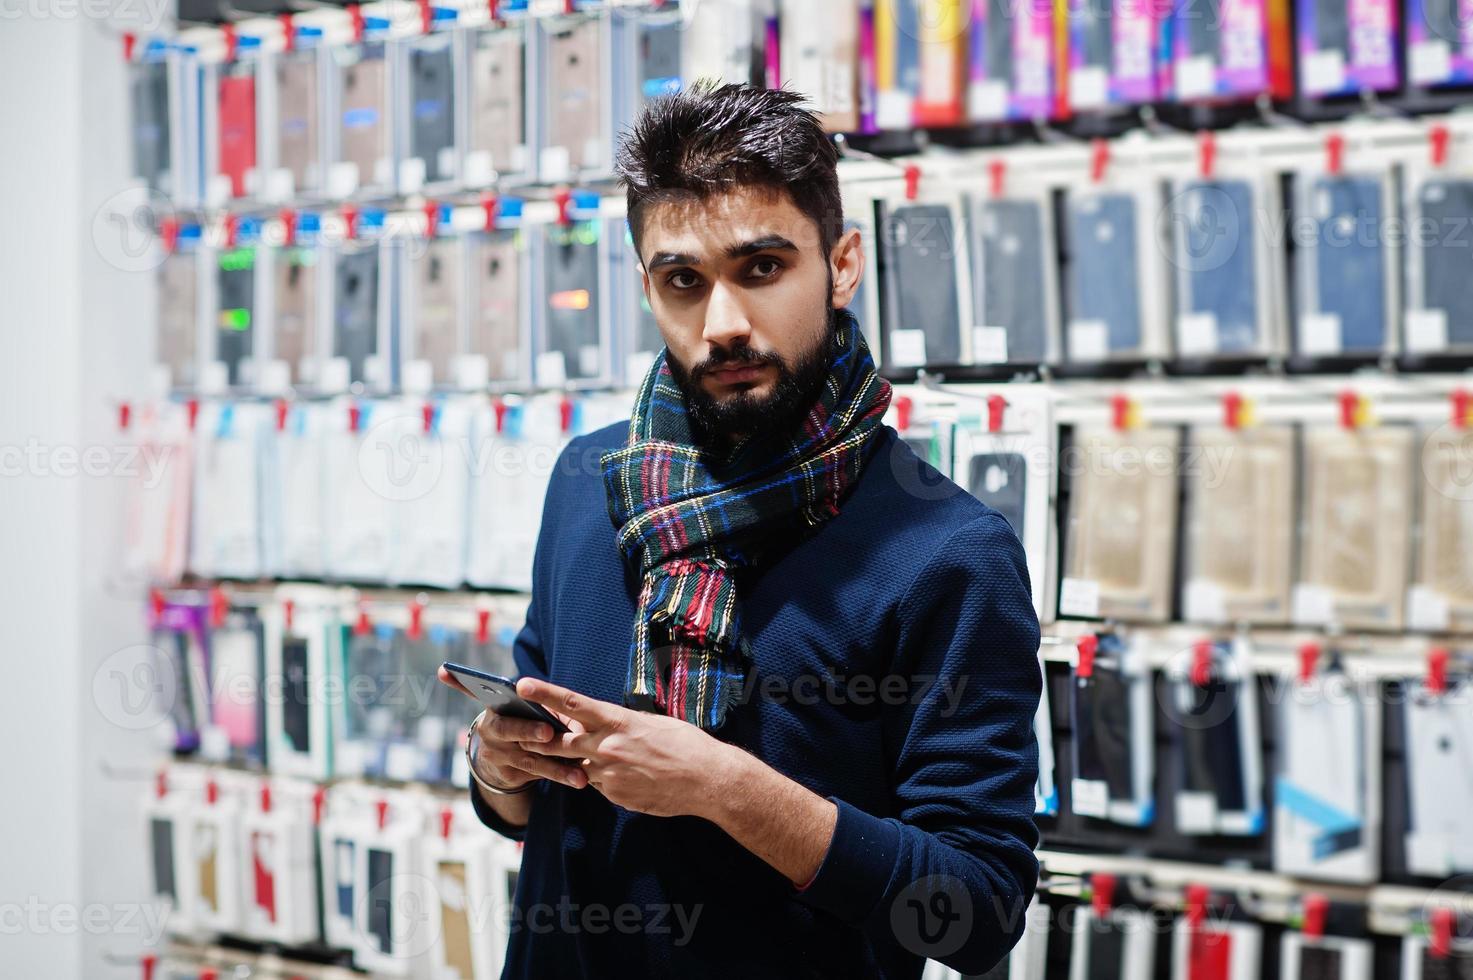 Comprador de cliente de hombre de barba india en la tienda de teléfonos móviles mirando en su teléfono inteligente. concepto de pueblos y tecnologías del sur de Asia. tienda de celulares foto